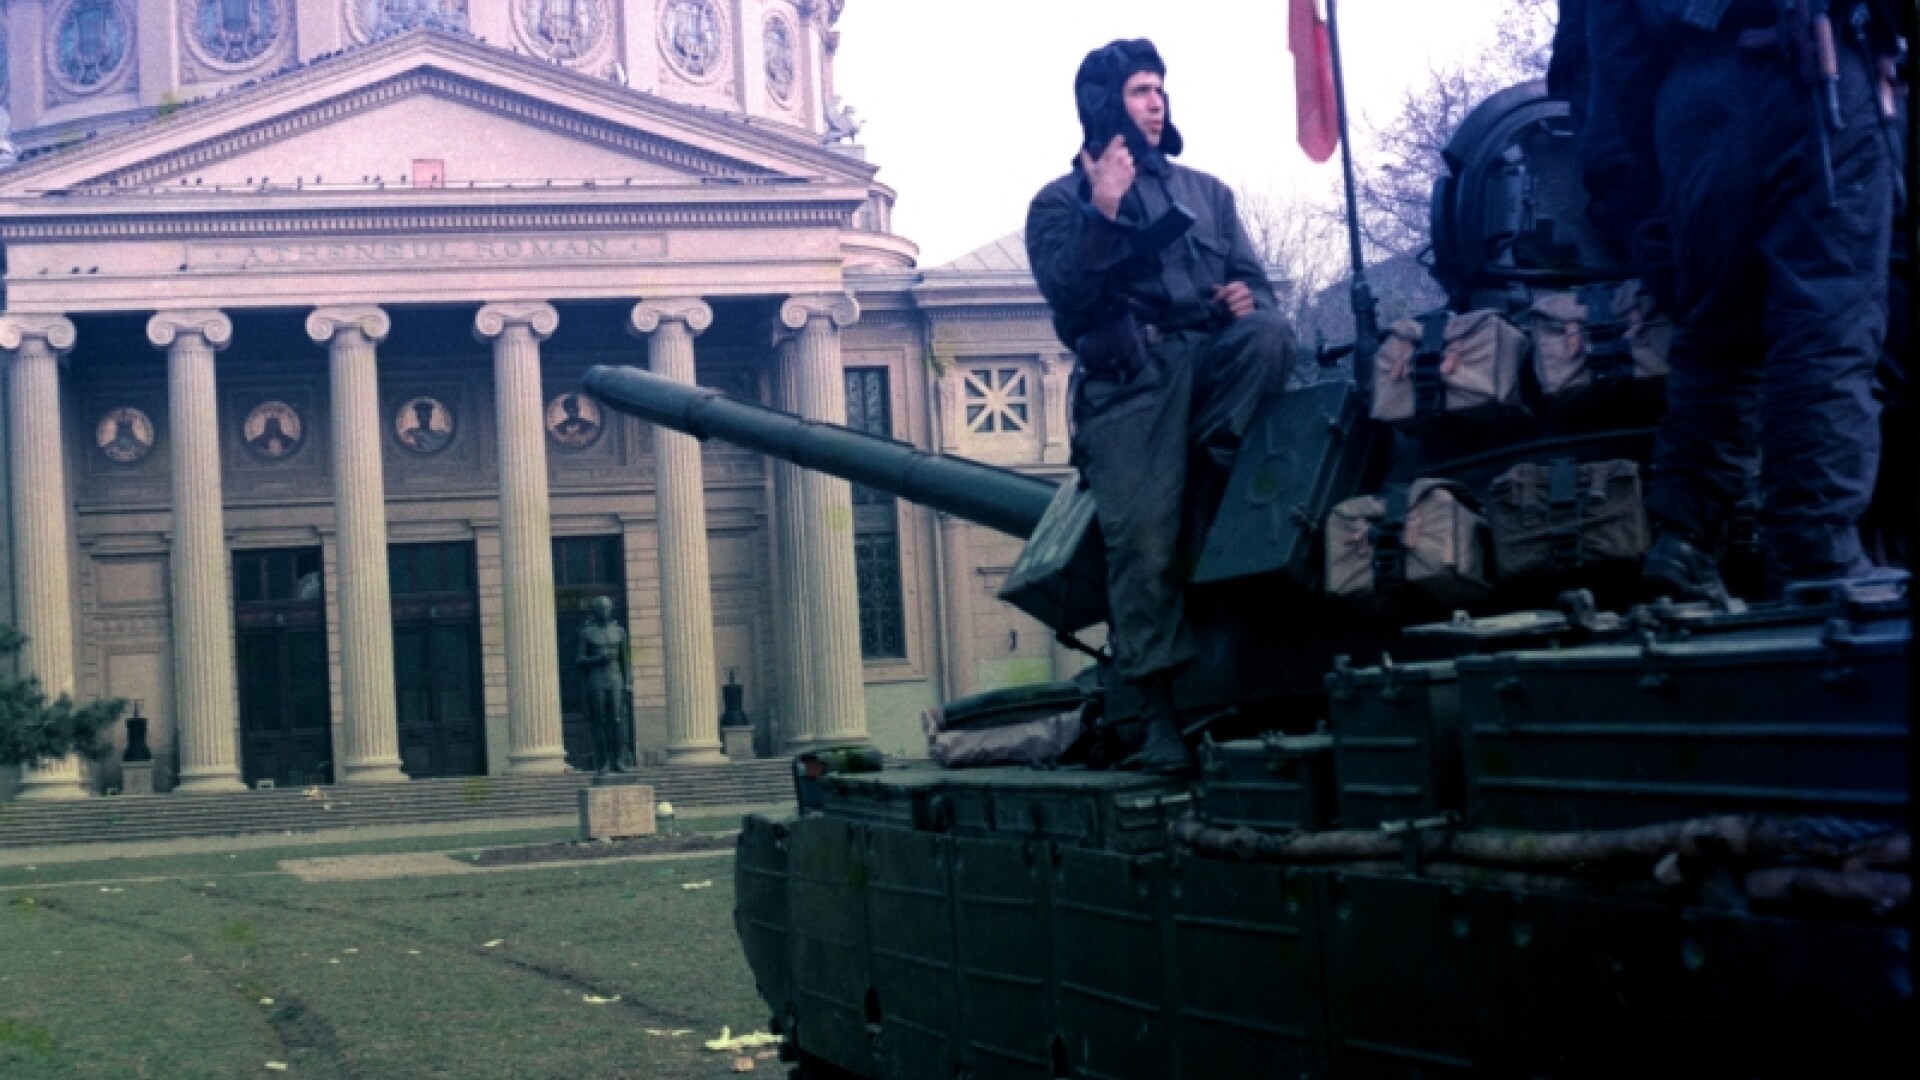 tancuri la Ateneu, revolutie 89, Bucuresti